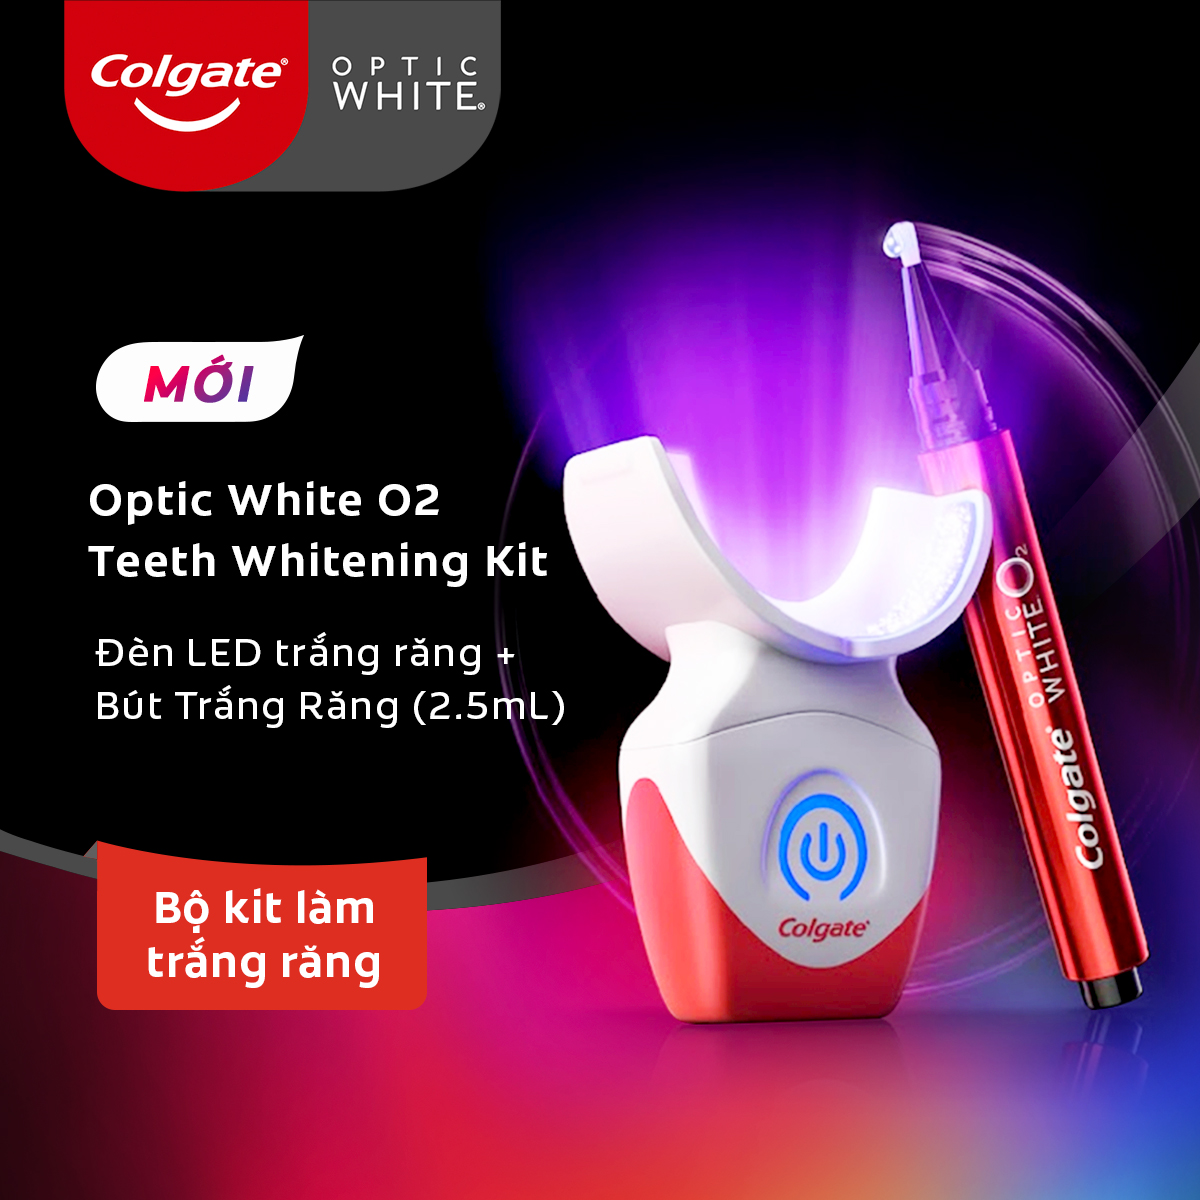 Bộ Kit làm trắng răng Colgate Optic White O2